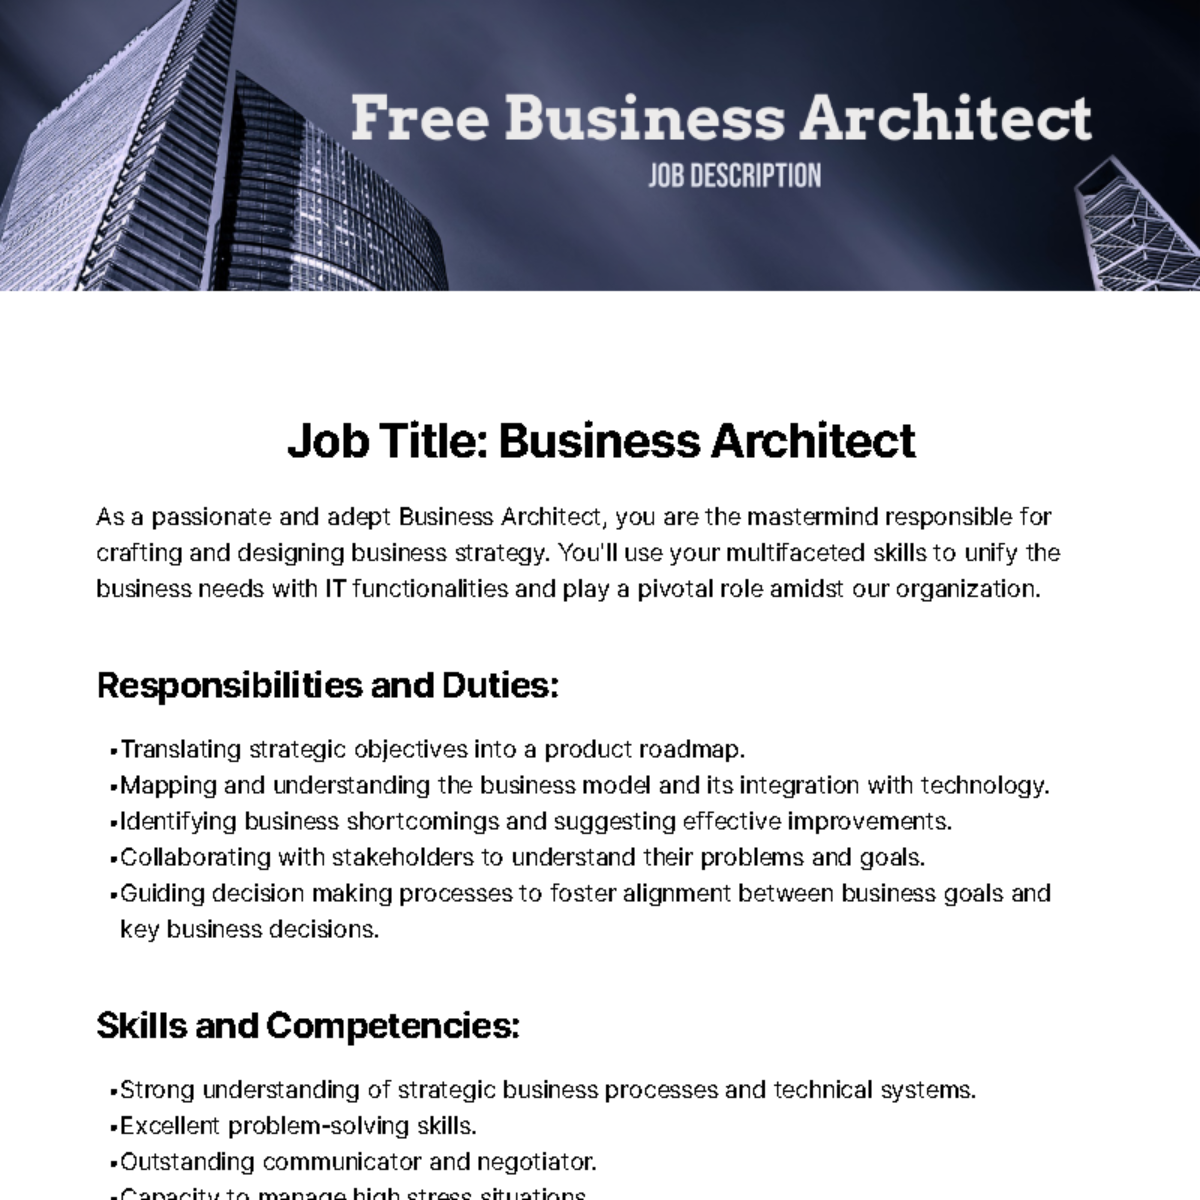 Free Business Architect Job Description Template